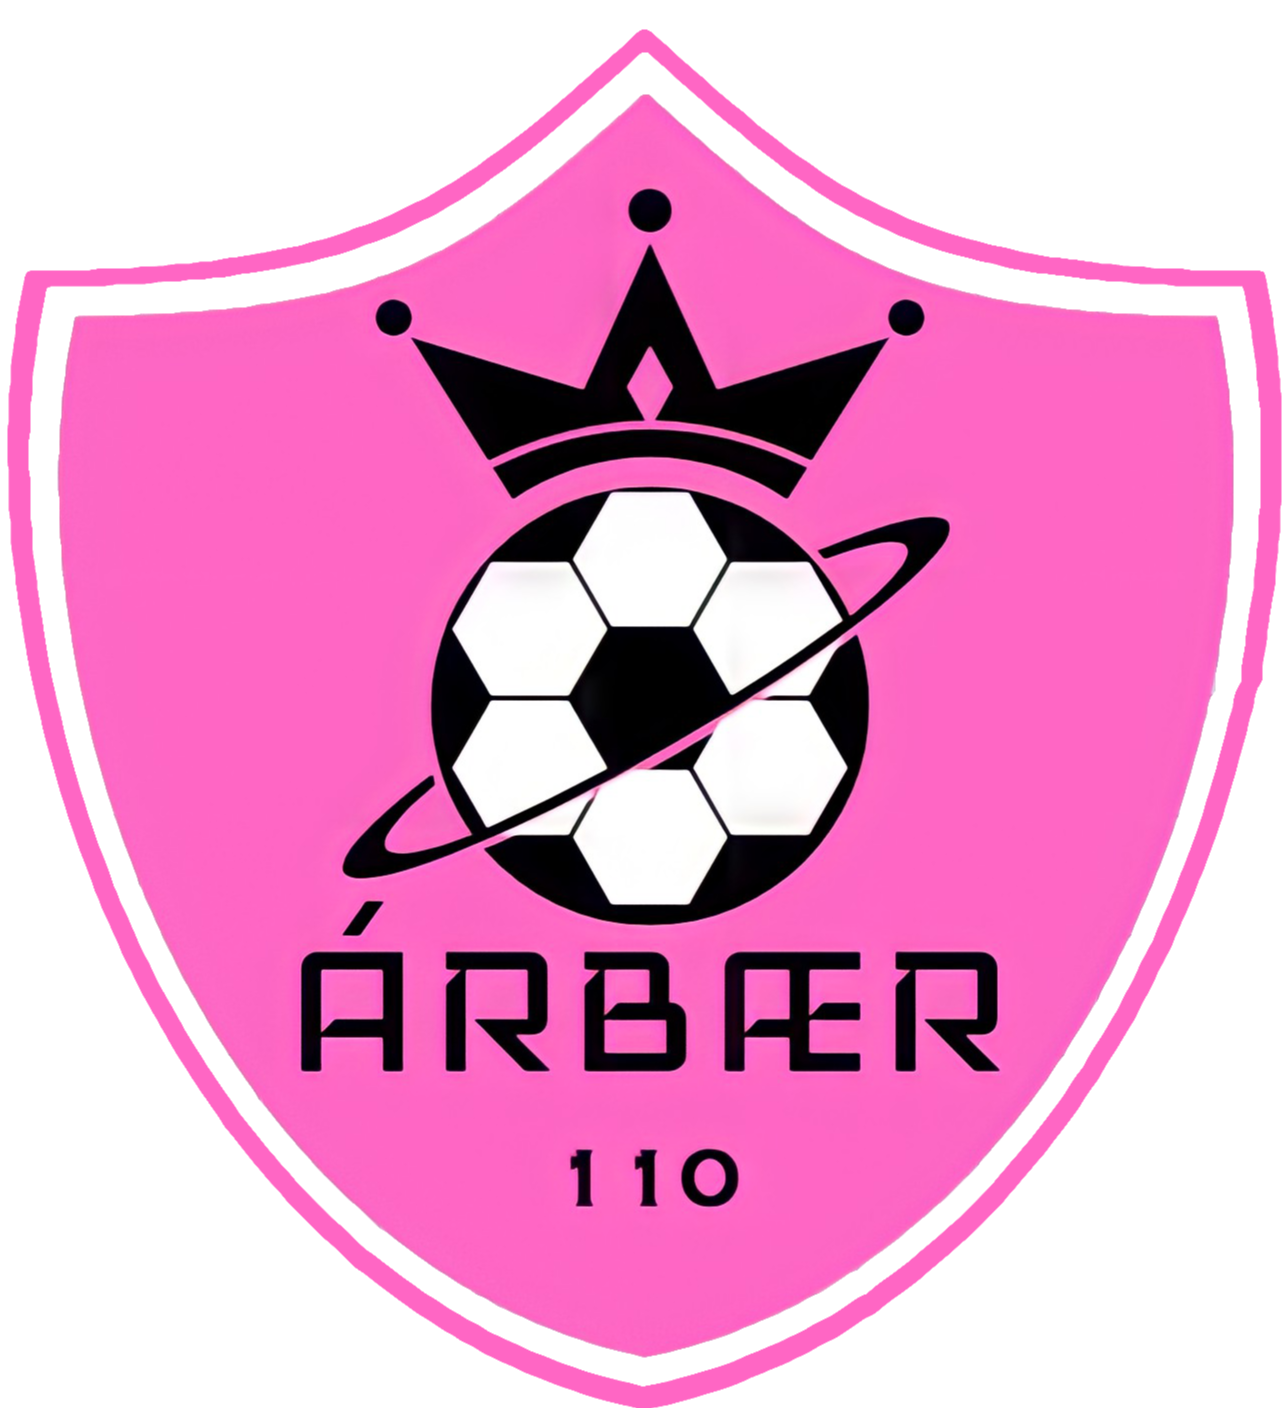 阿爾拜爾足球俱樂部